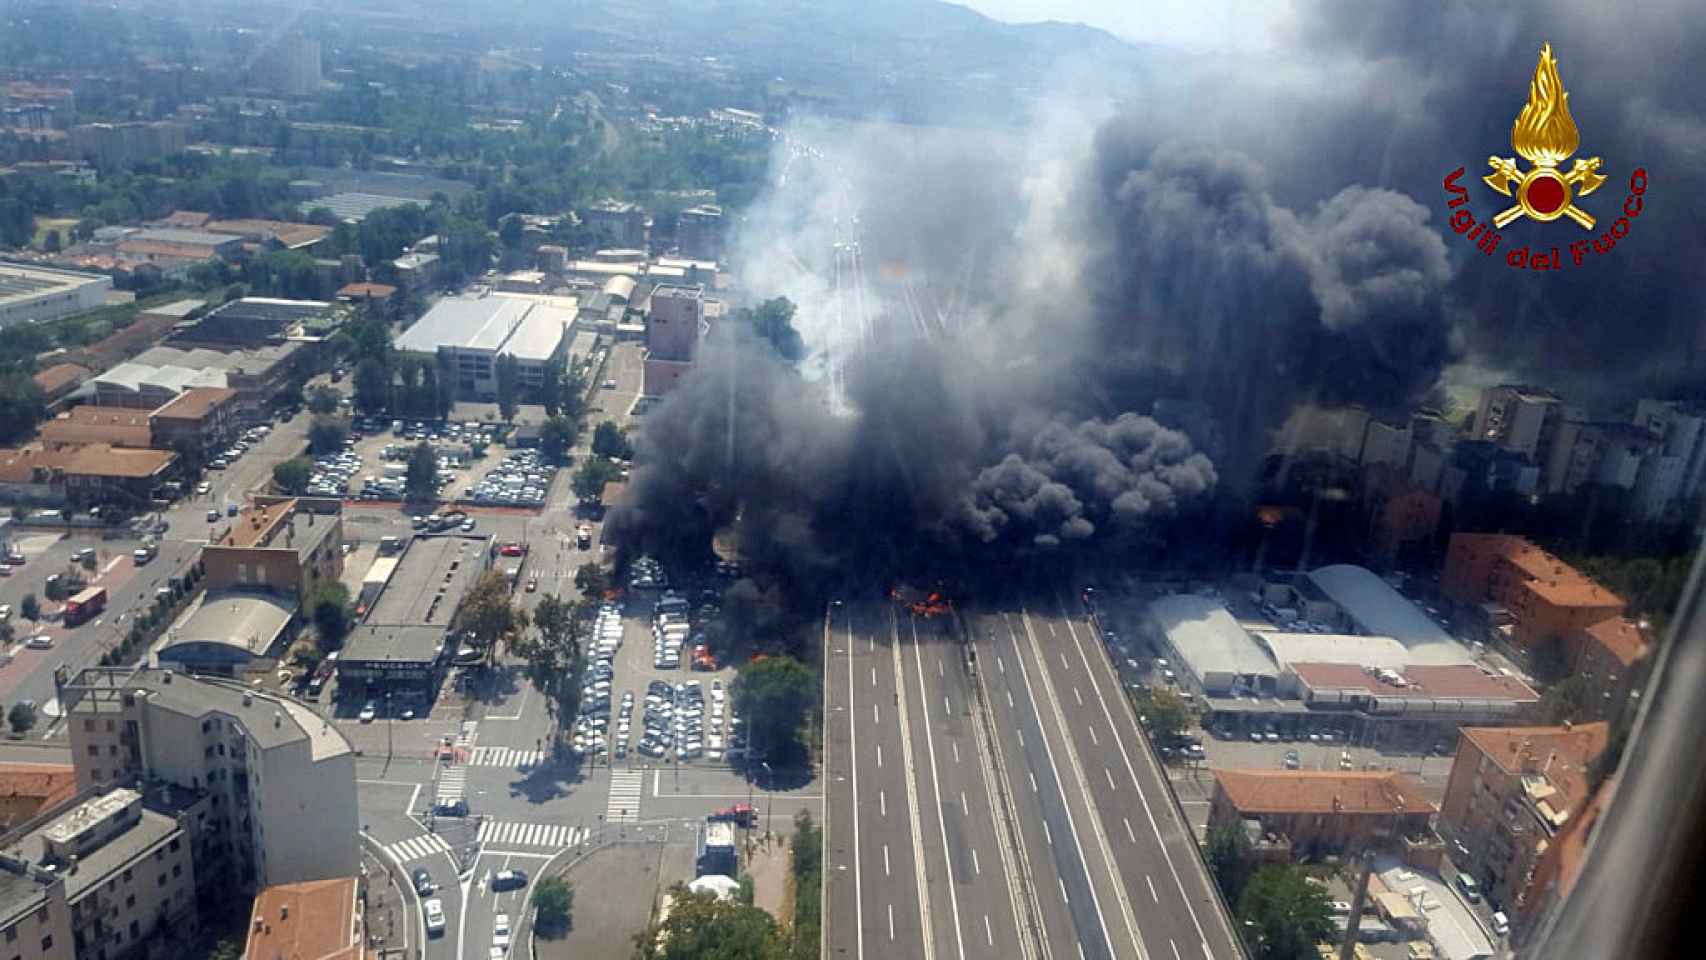 Incendio después de que un accidente causara una gran explosión en las afueras de Bolonia.